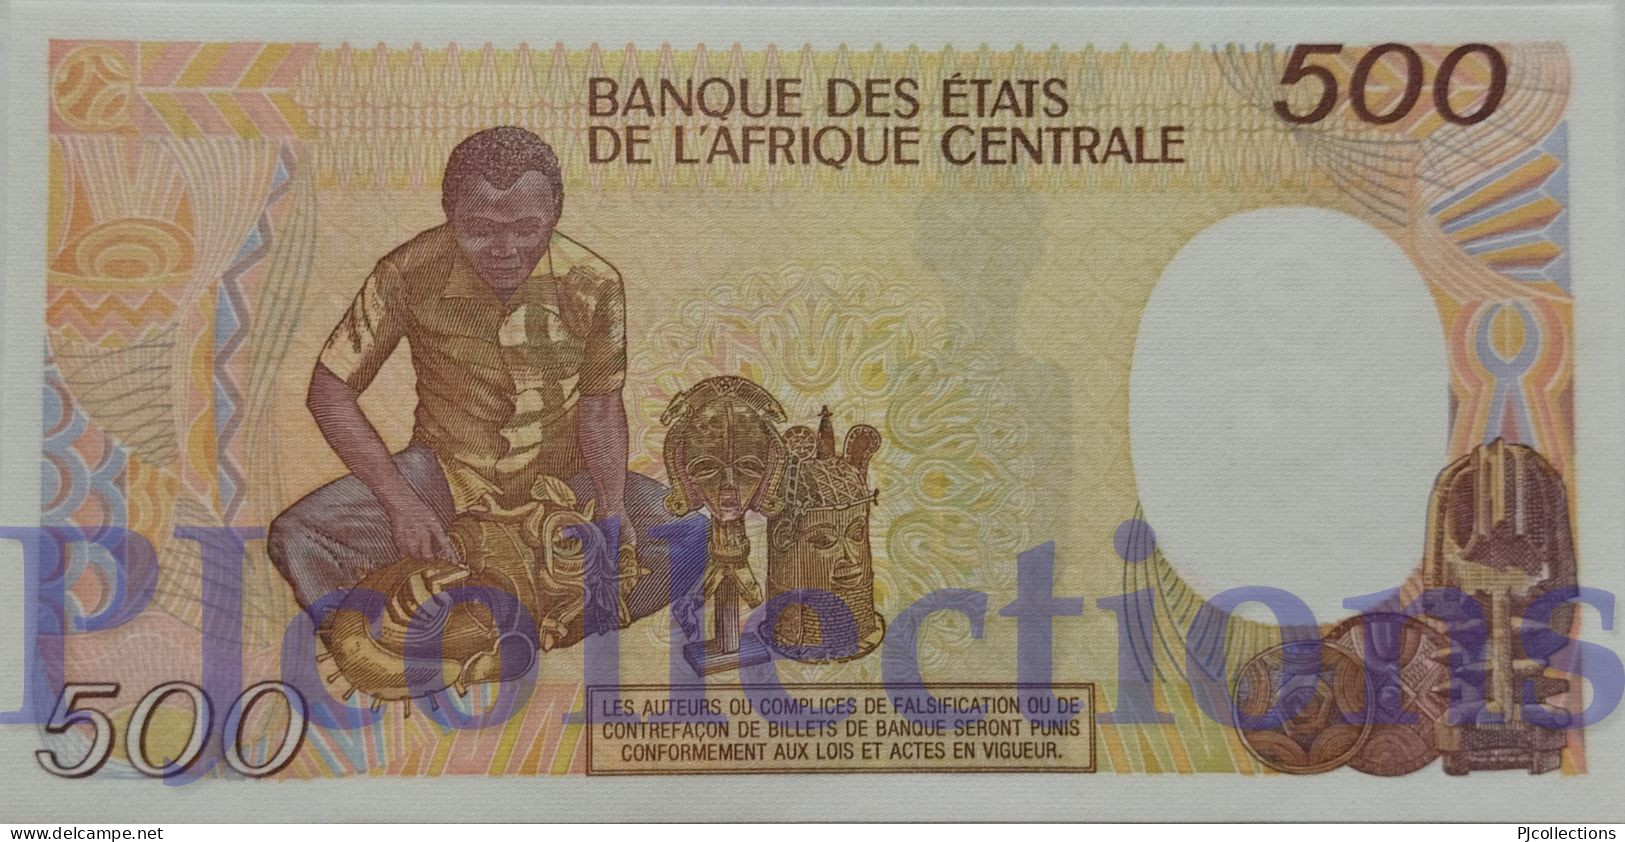 GABON 500 FRANCS 1985 PICK 8 UNC - Gabon